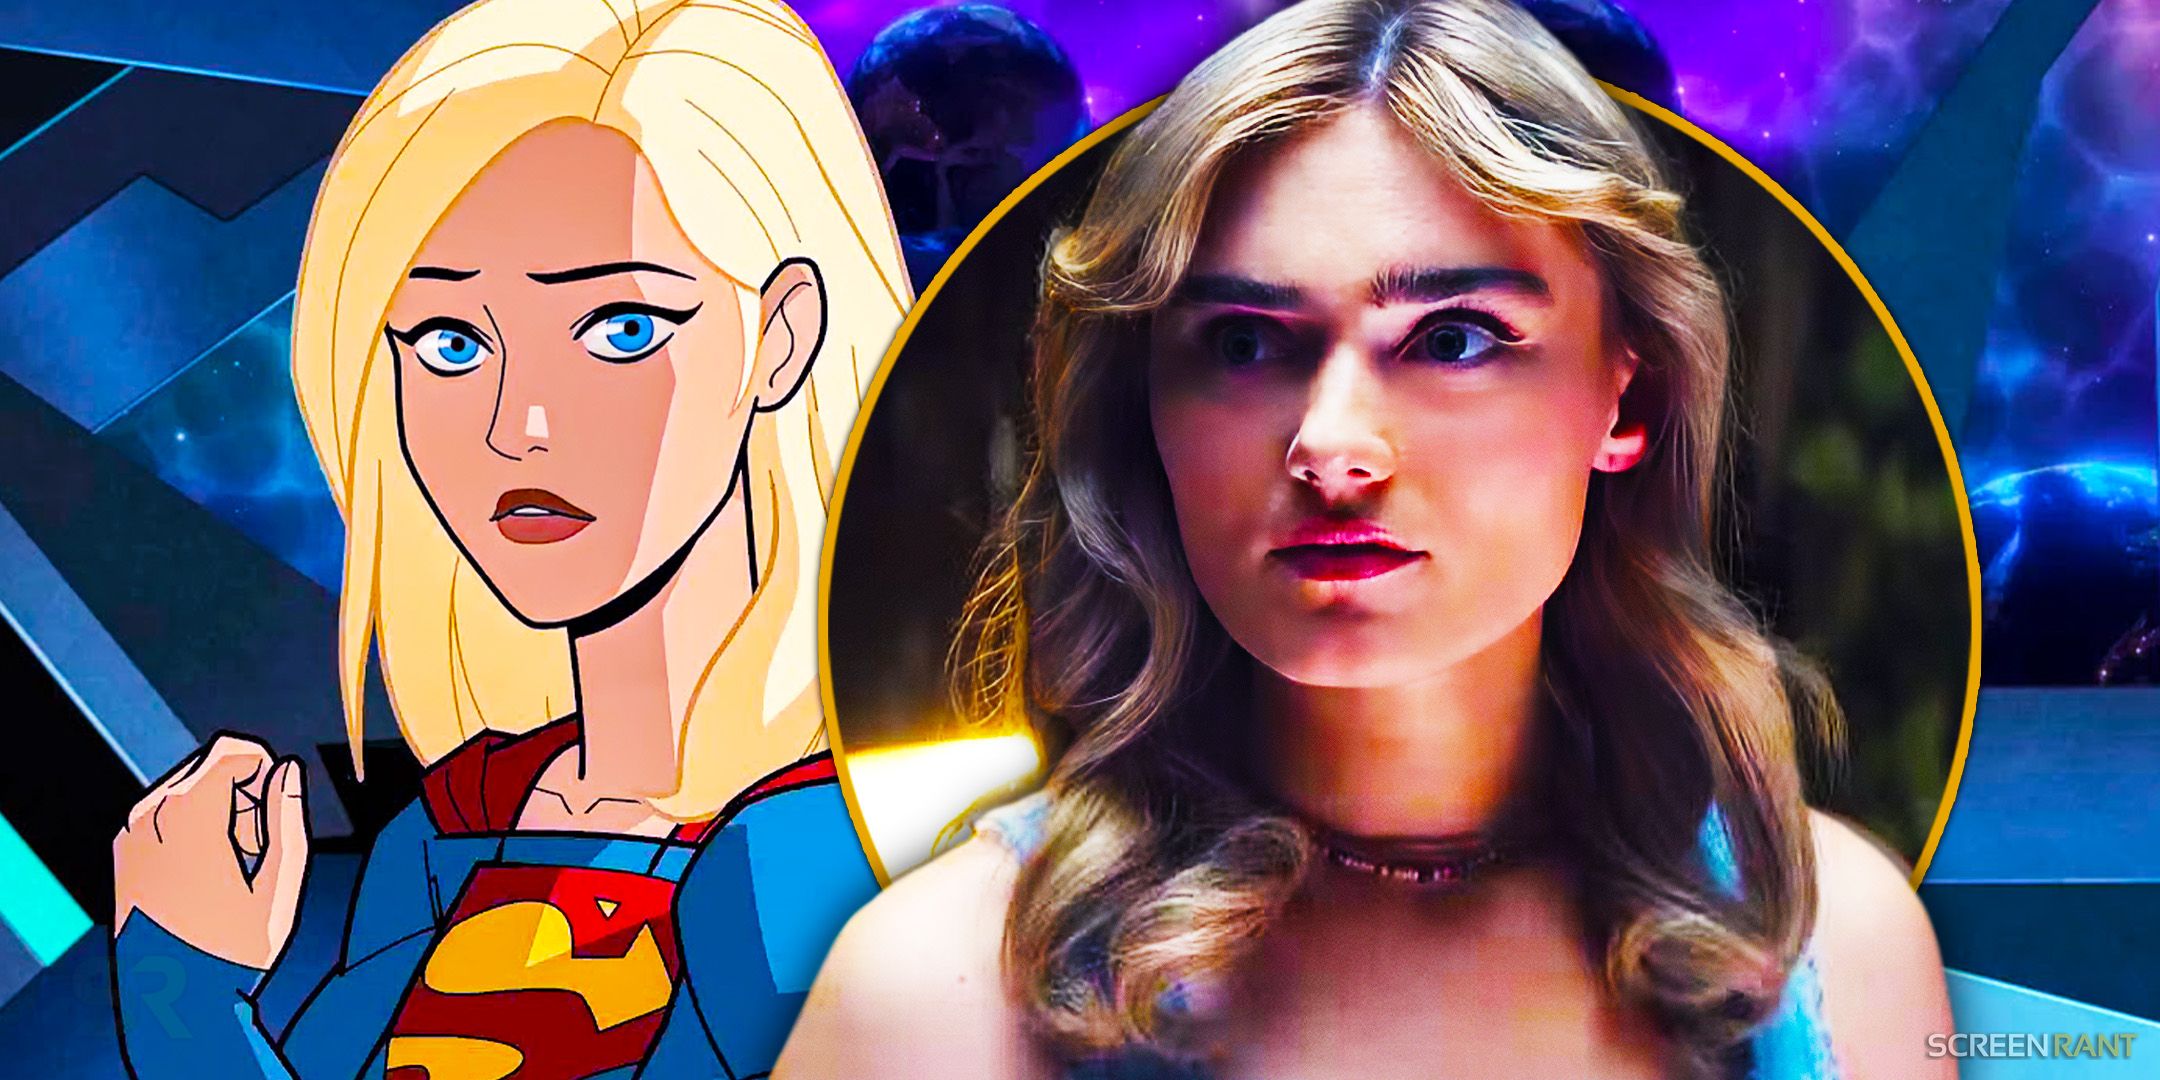 Un actor de Supergirl confirma que su audición para el reboot de DC fue fallida y revela que sueña con volver a ser actor en DC